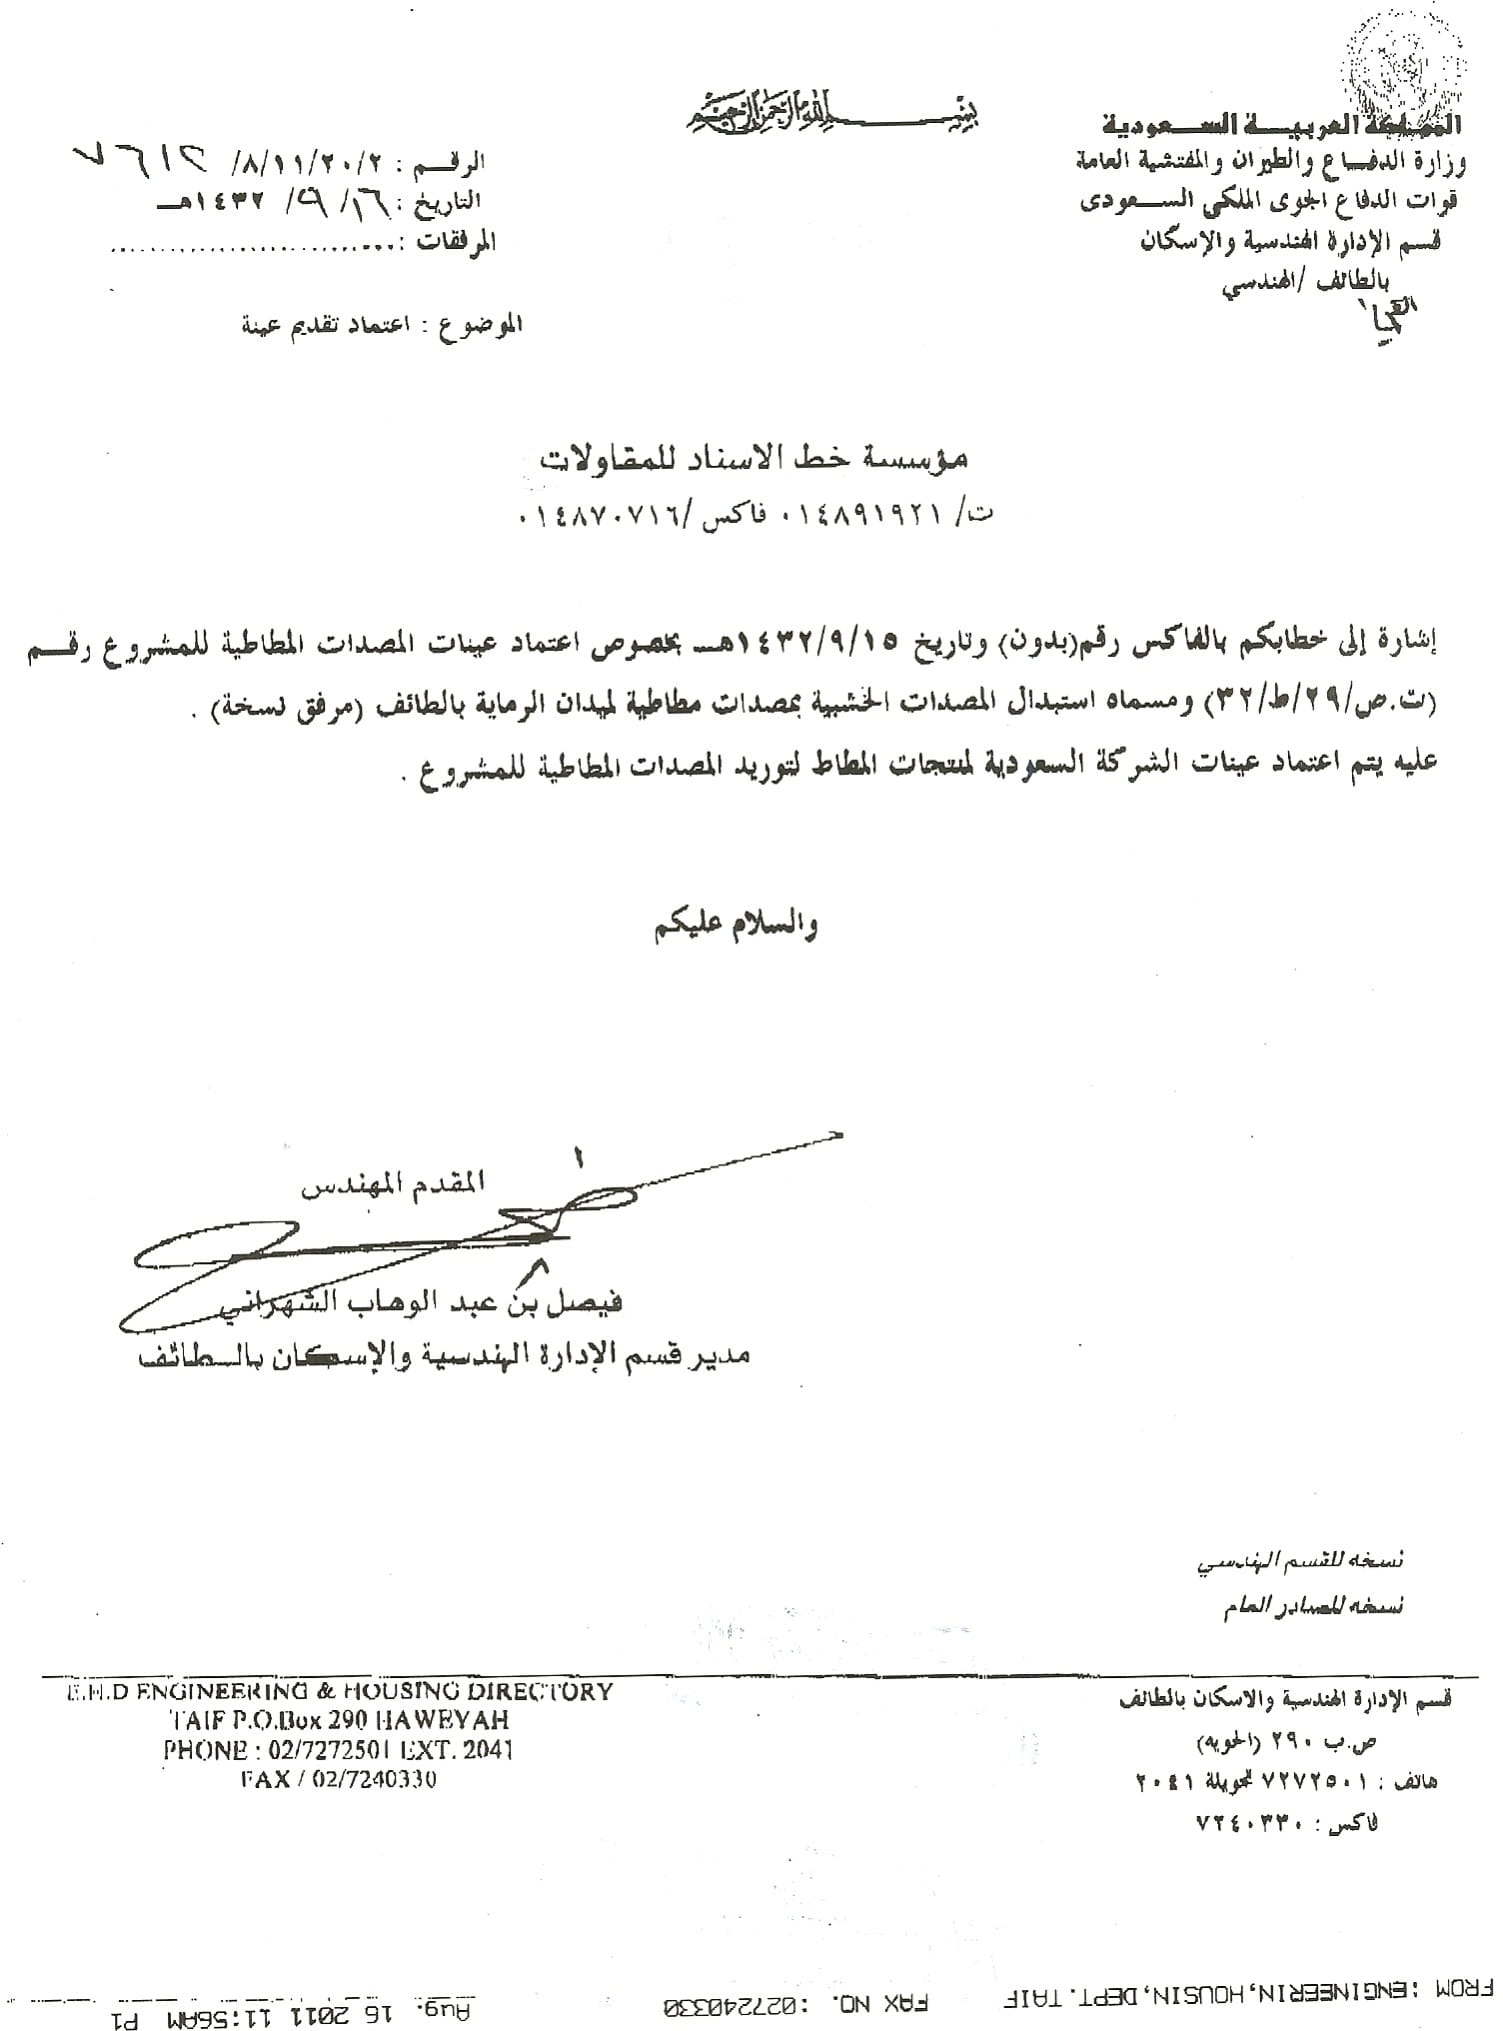 Certificate of Royal Saudi Air Defense Force-1